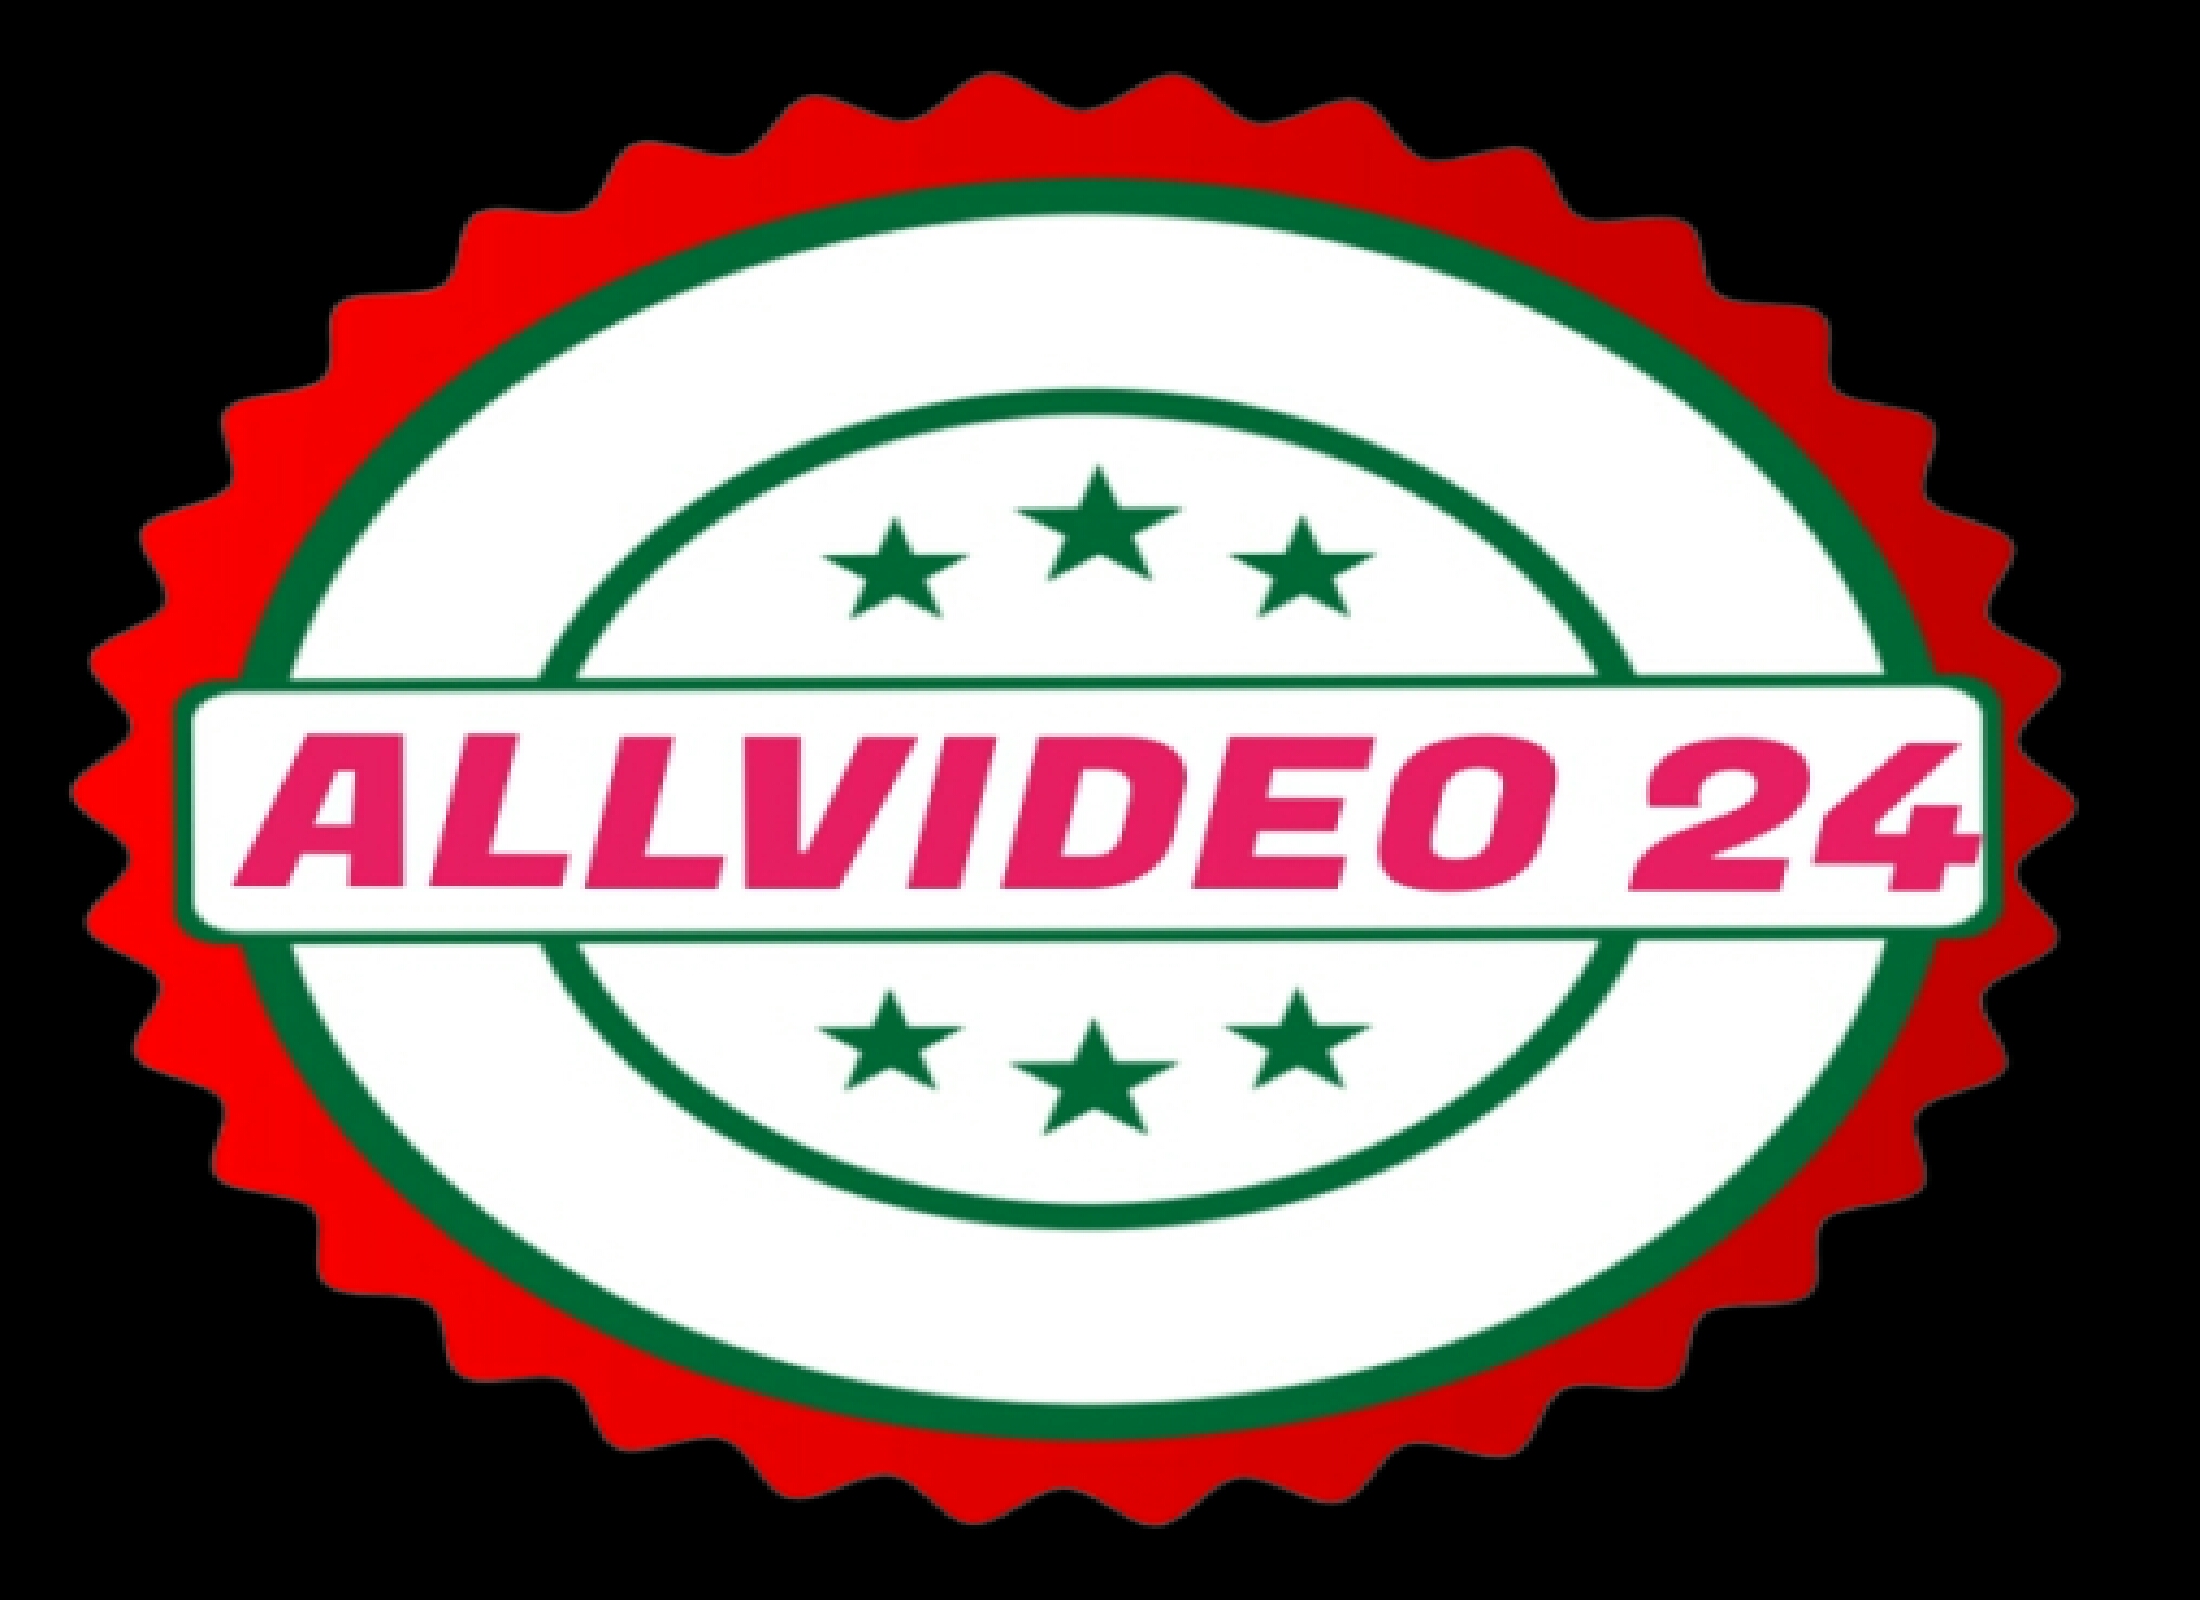 ALLVIDEO 24